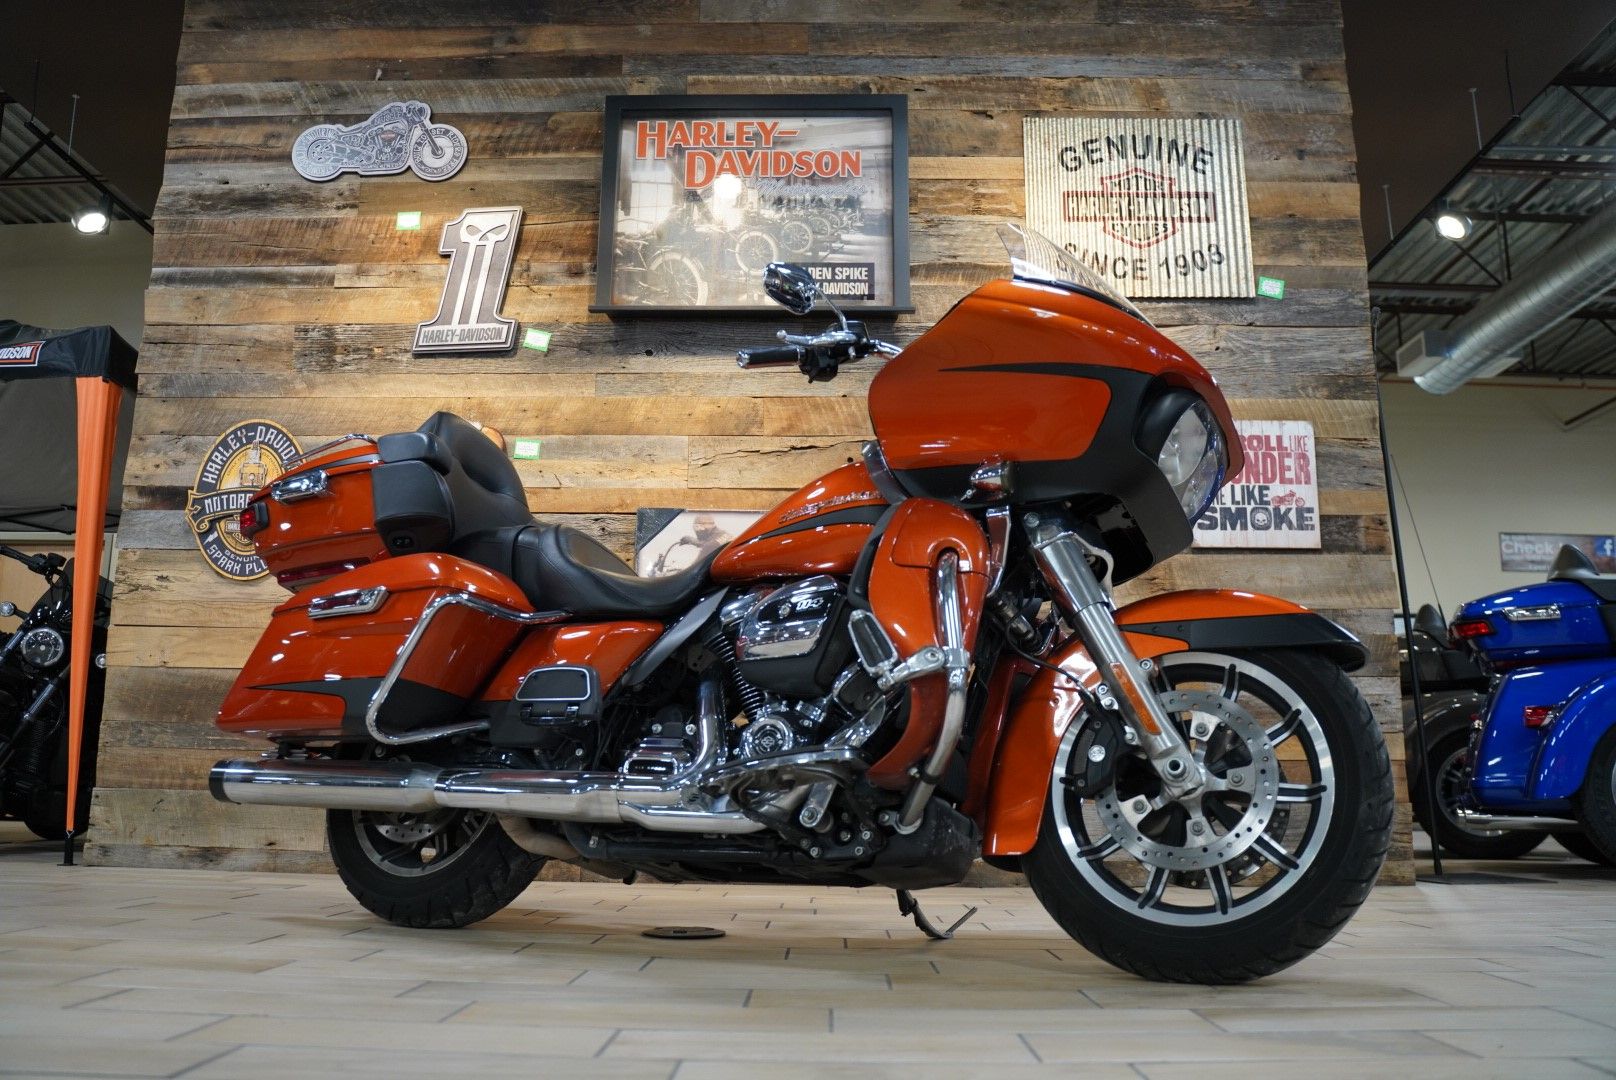 2019 Harley-Davidson Road Glide® Ultra in Riverdale, Utah - Photo 1